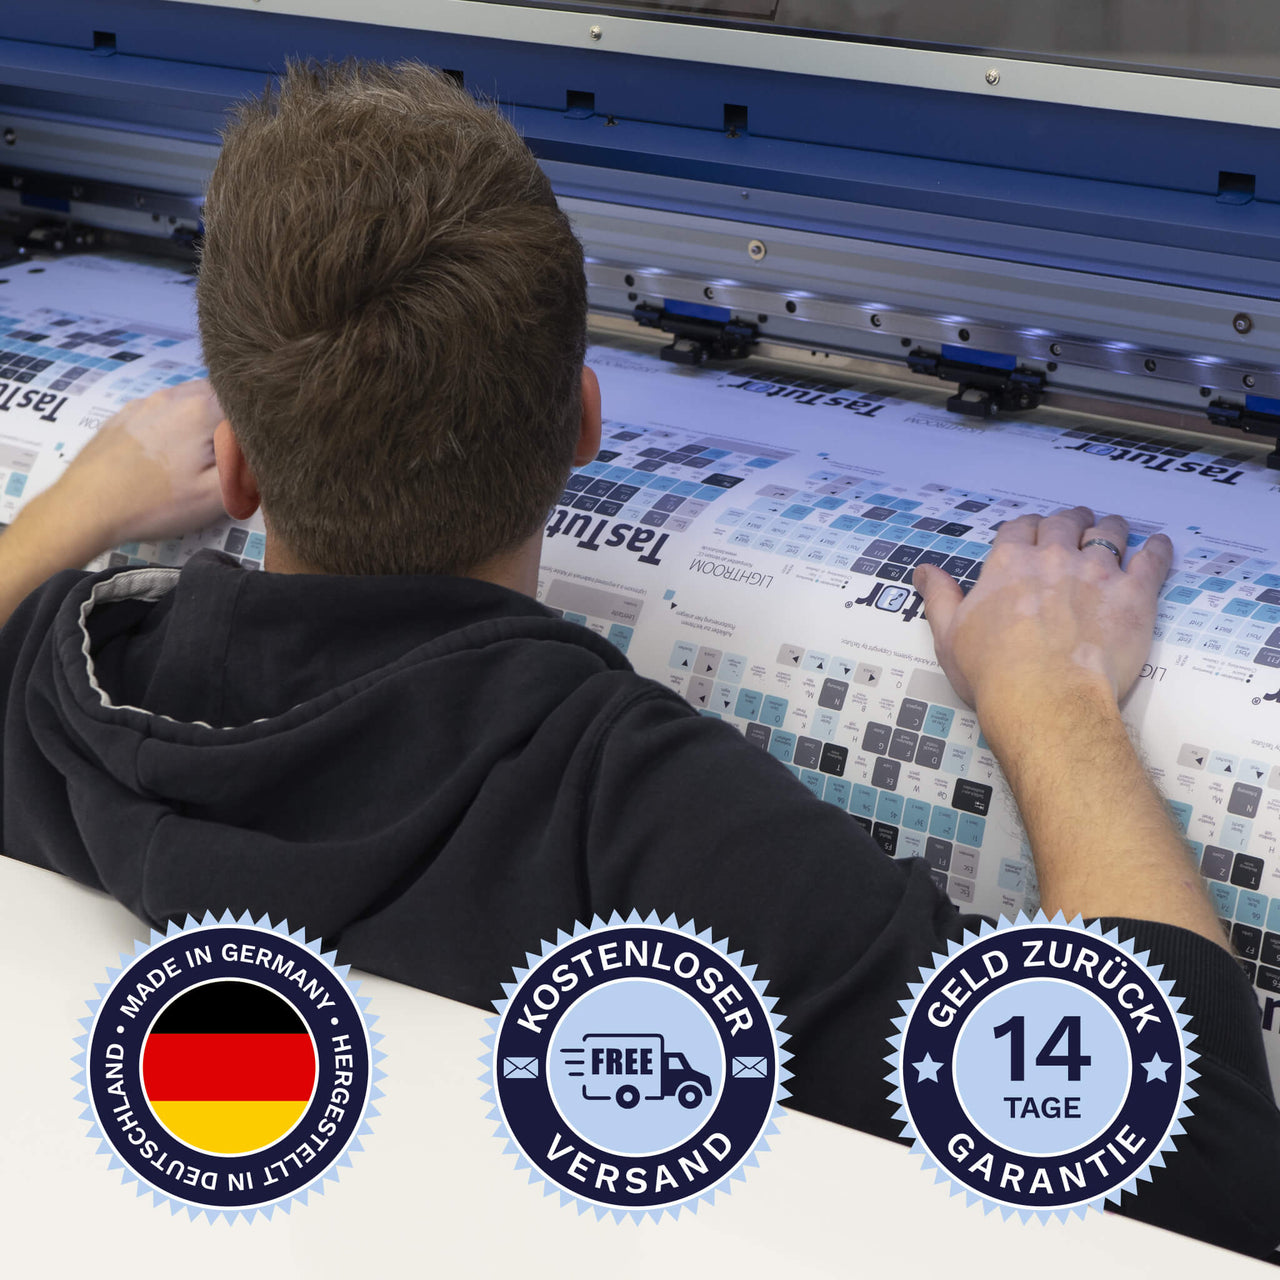 Lightroom Tastaturaufkleber werden in Deutschland hergestellt. Der Versand ist kostenlos und wir gewährleisten 14 Tage Geld zurück Garantie | TasTutor